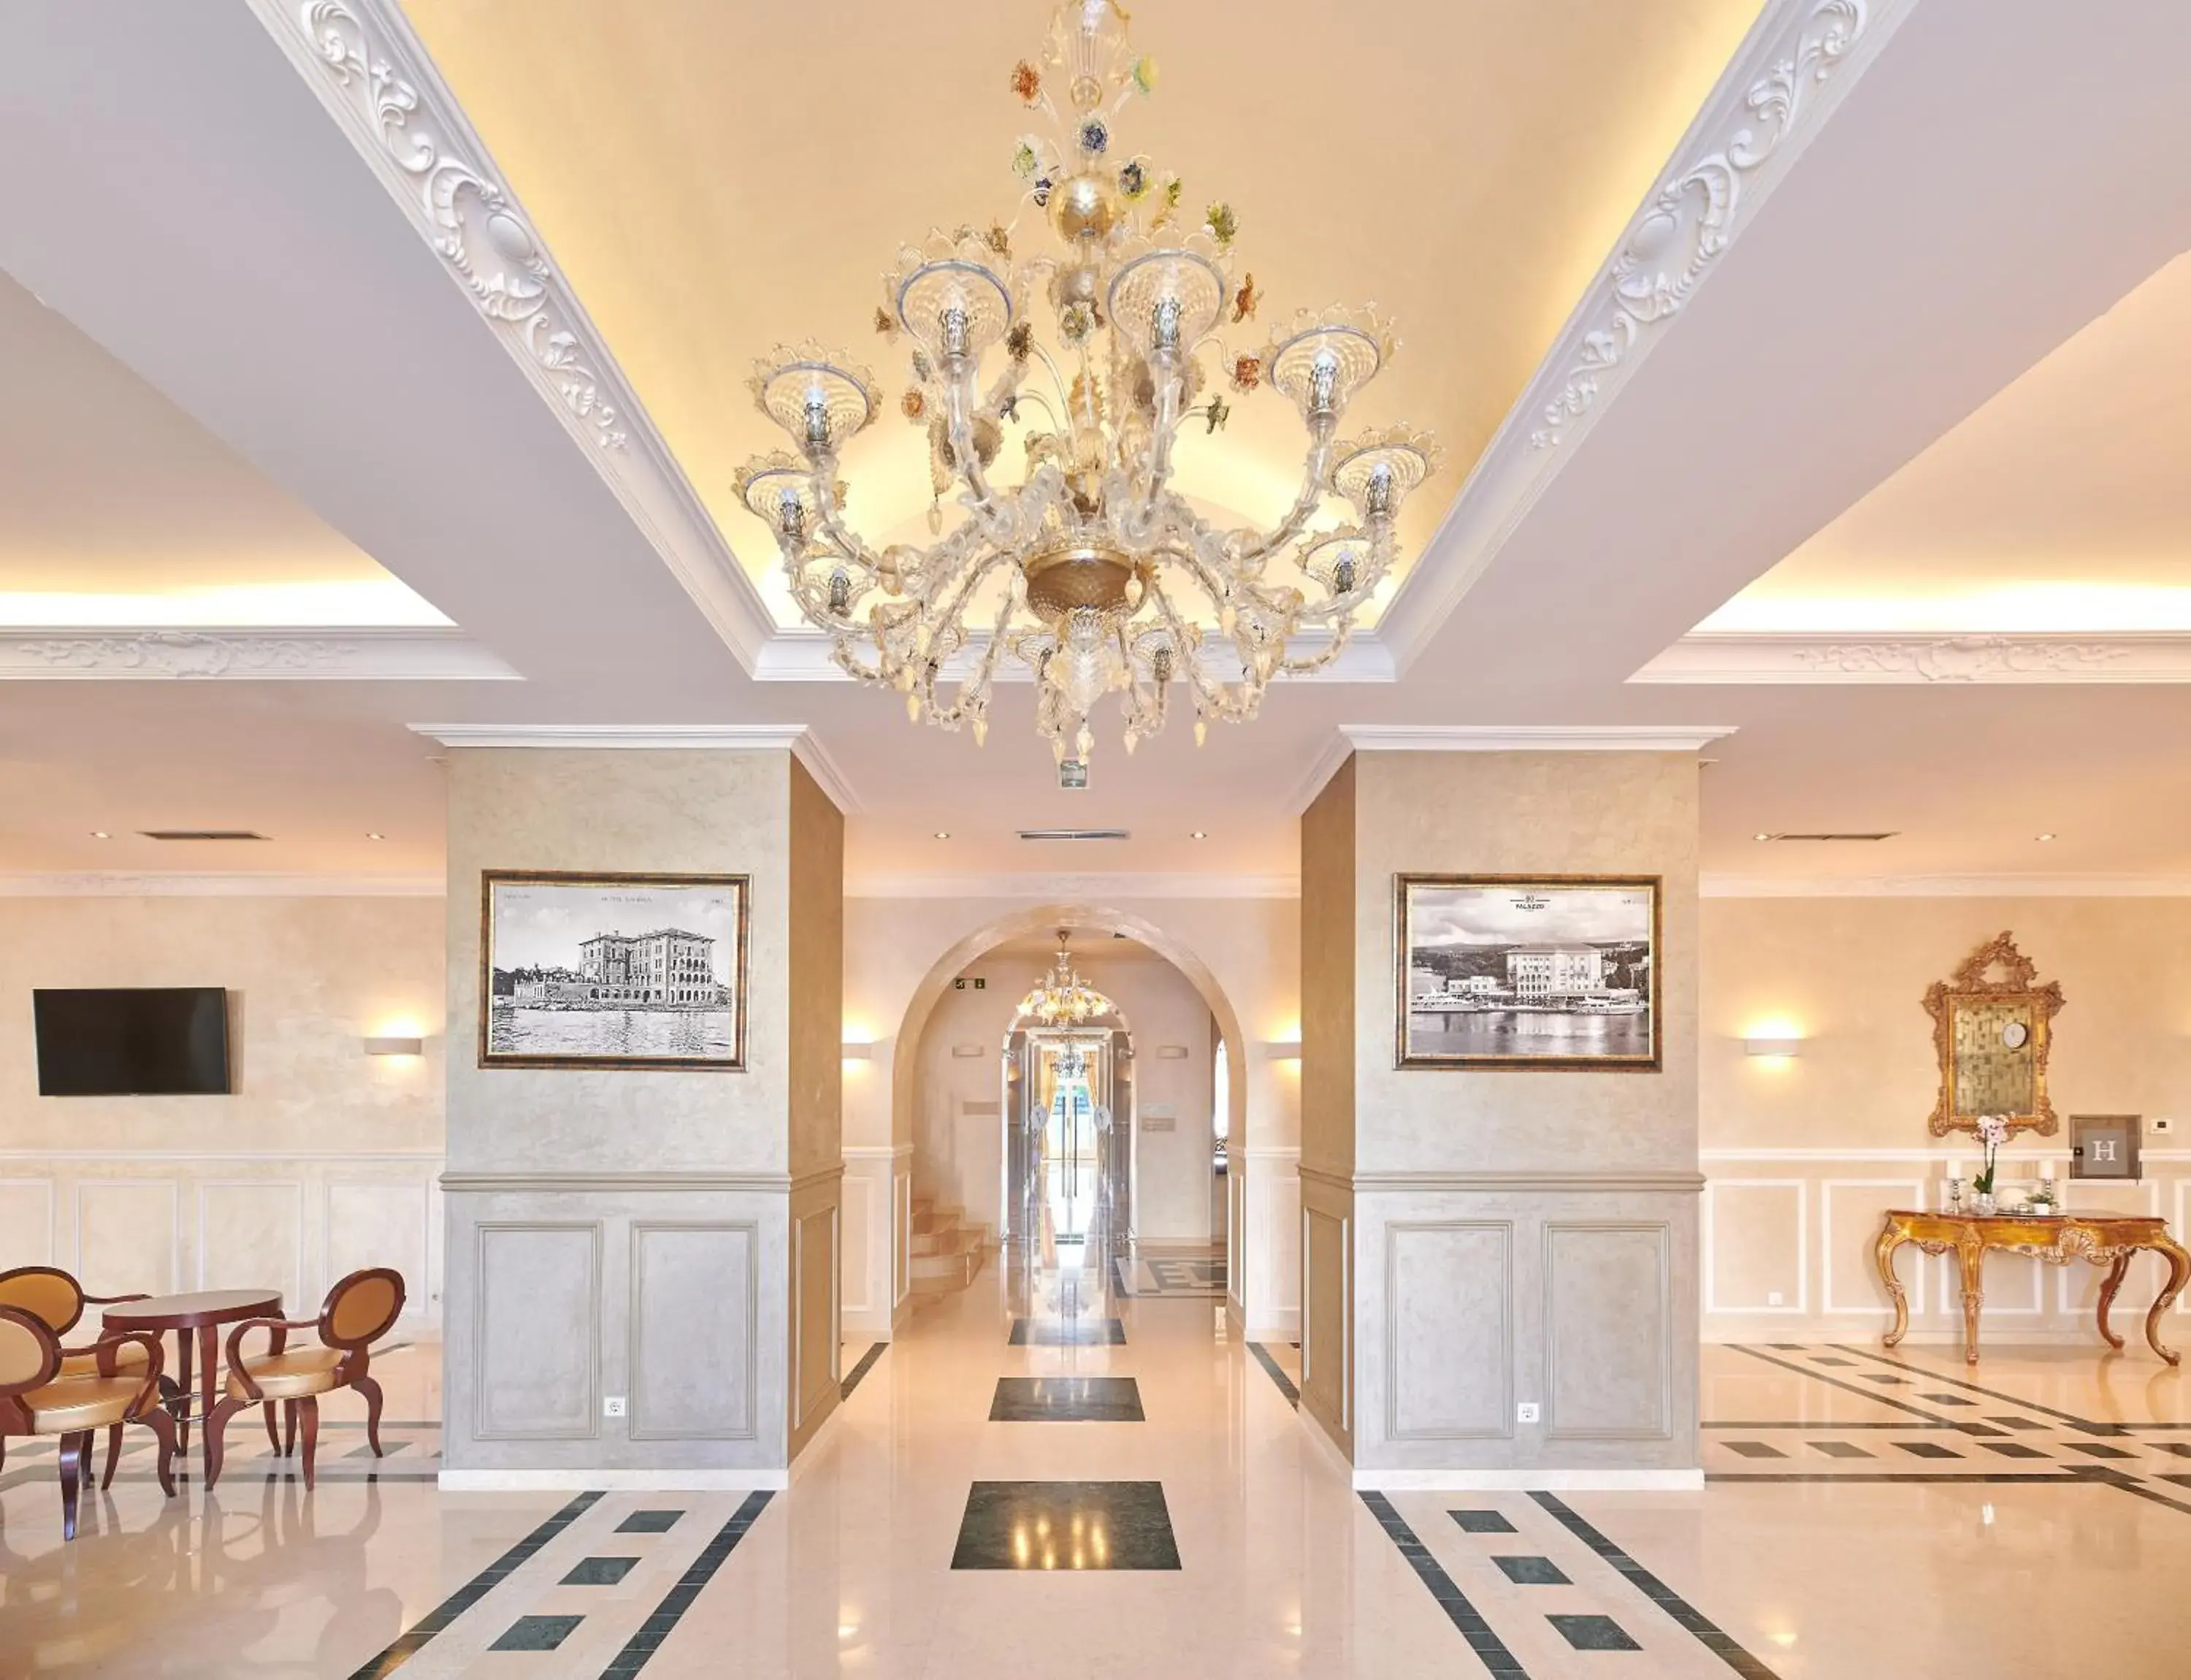 Lobby or reception, Lobby/Reception in BO Hotel Palazzo